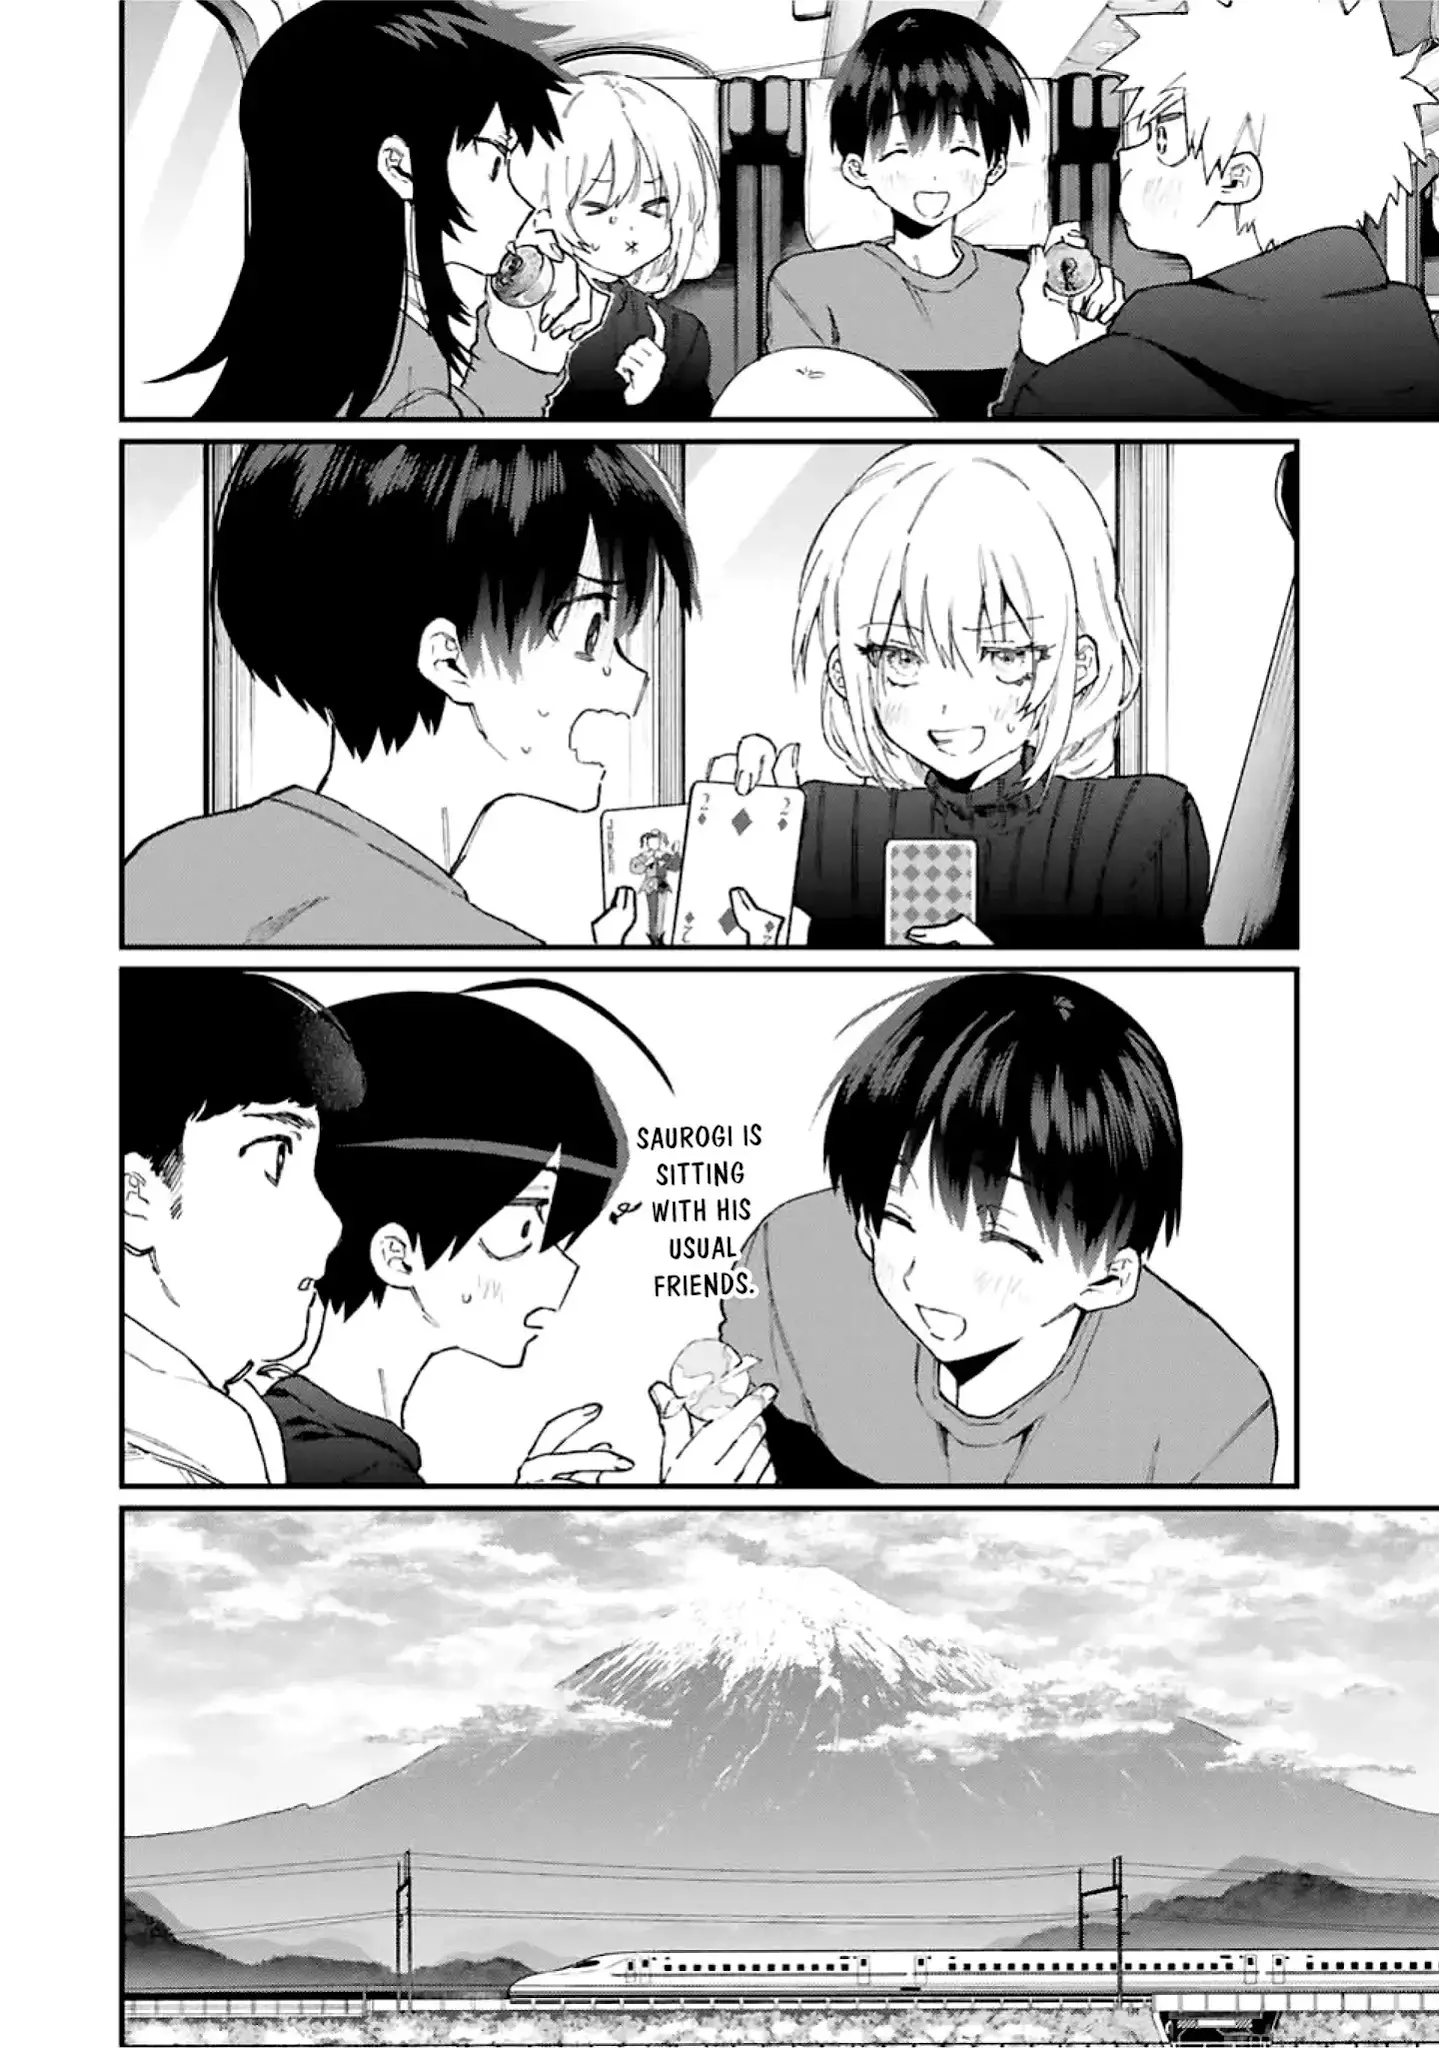 Shikimori's Not Just A Cutie - 89 page 5